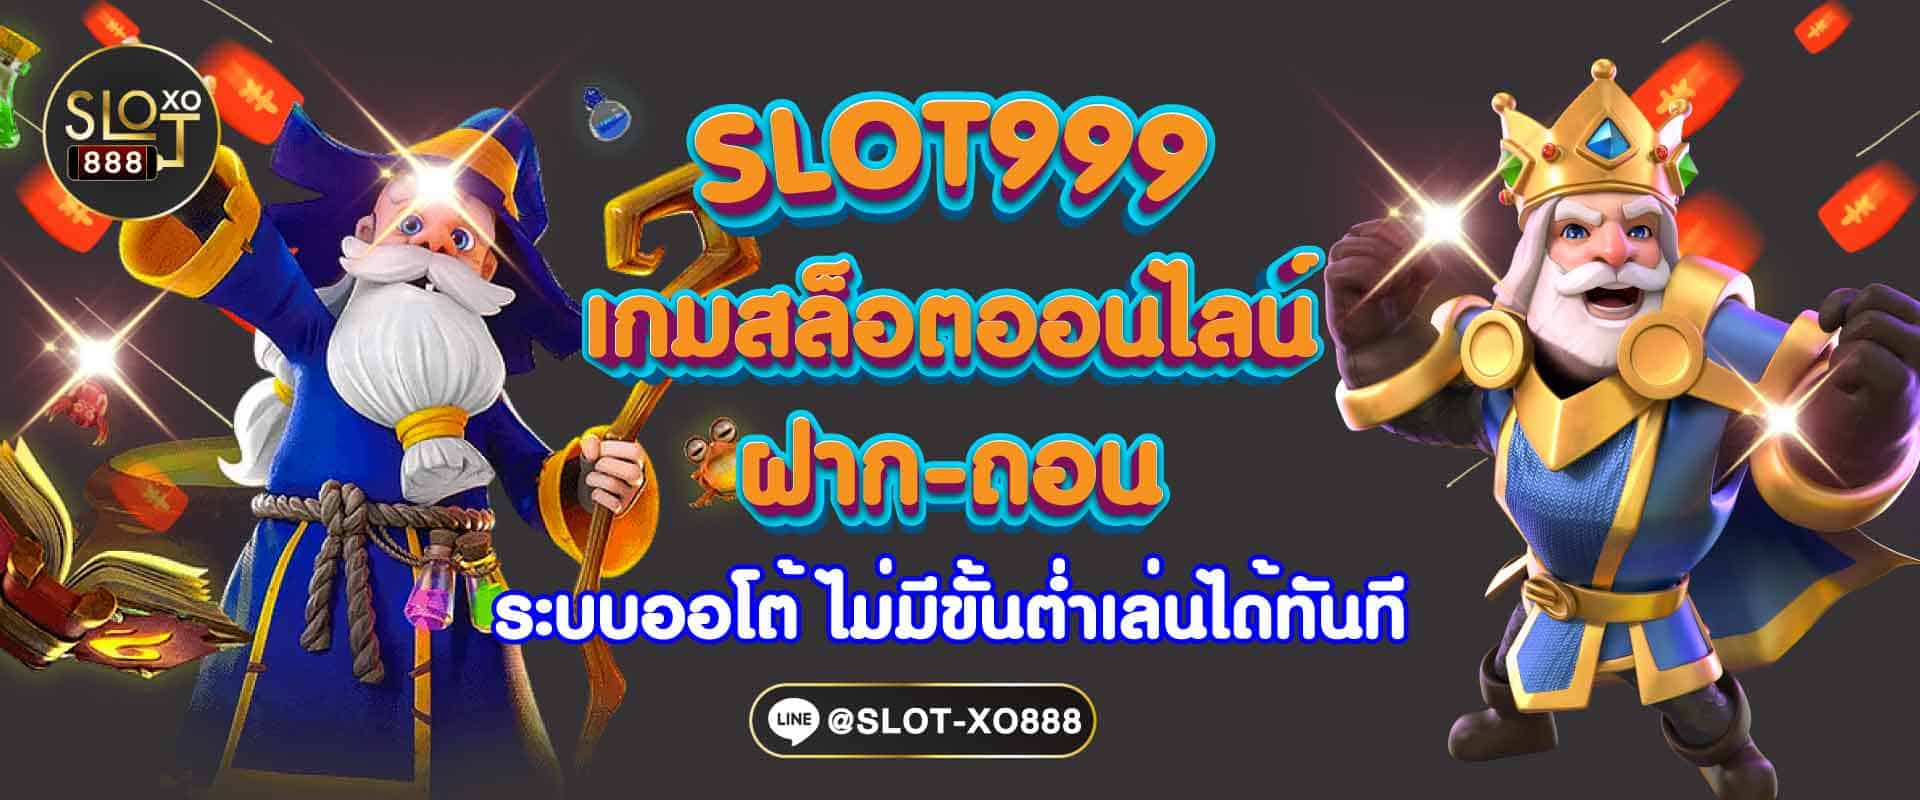 SLOT999 เกมออนไลน์ 1207